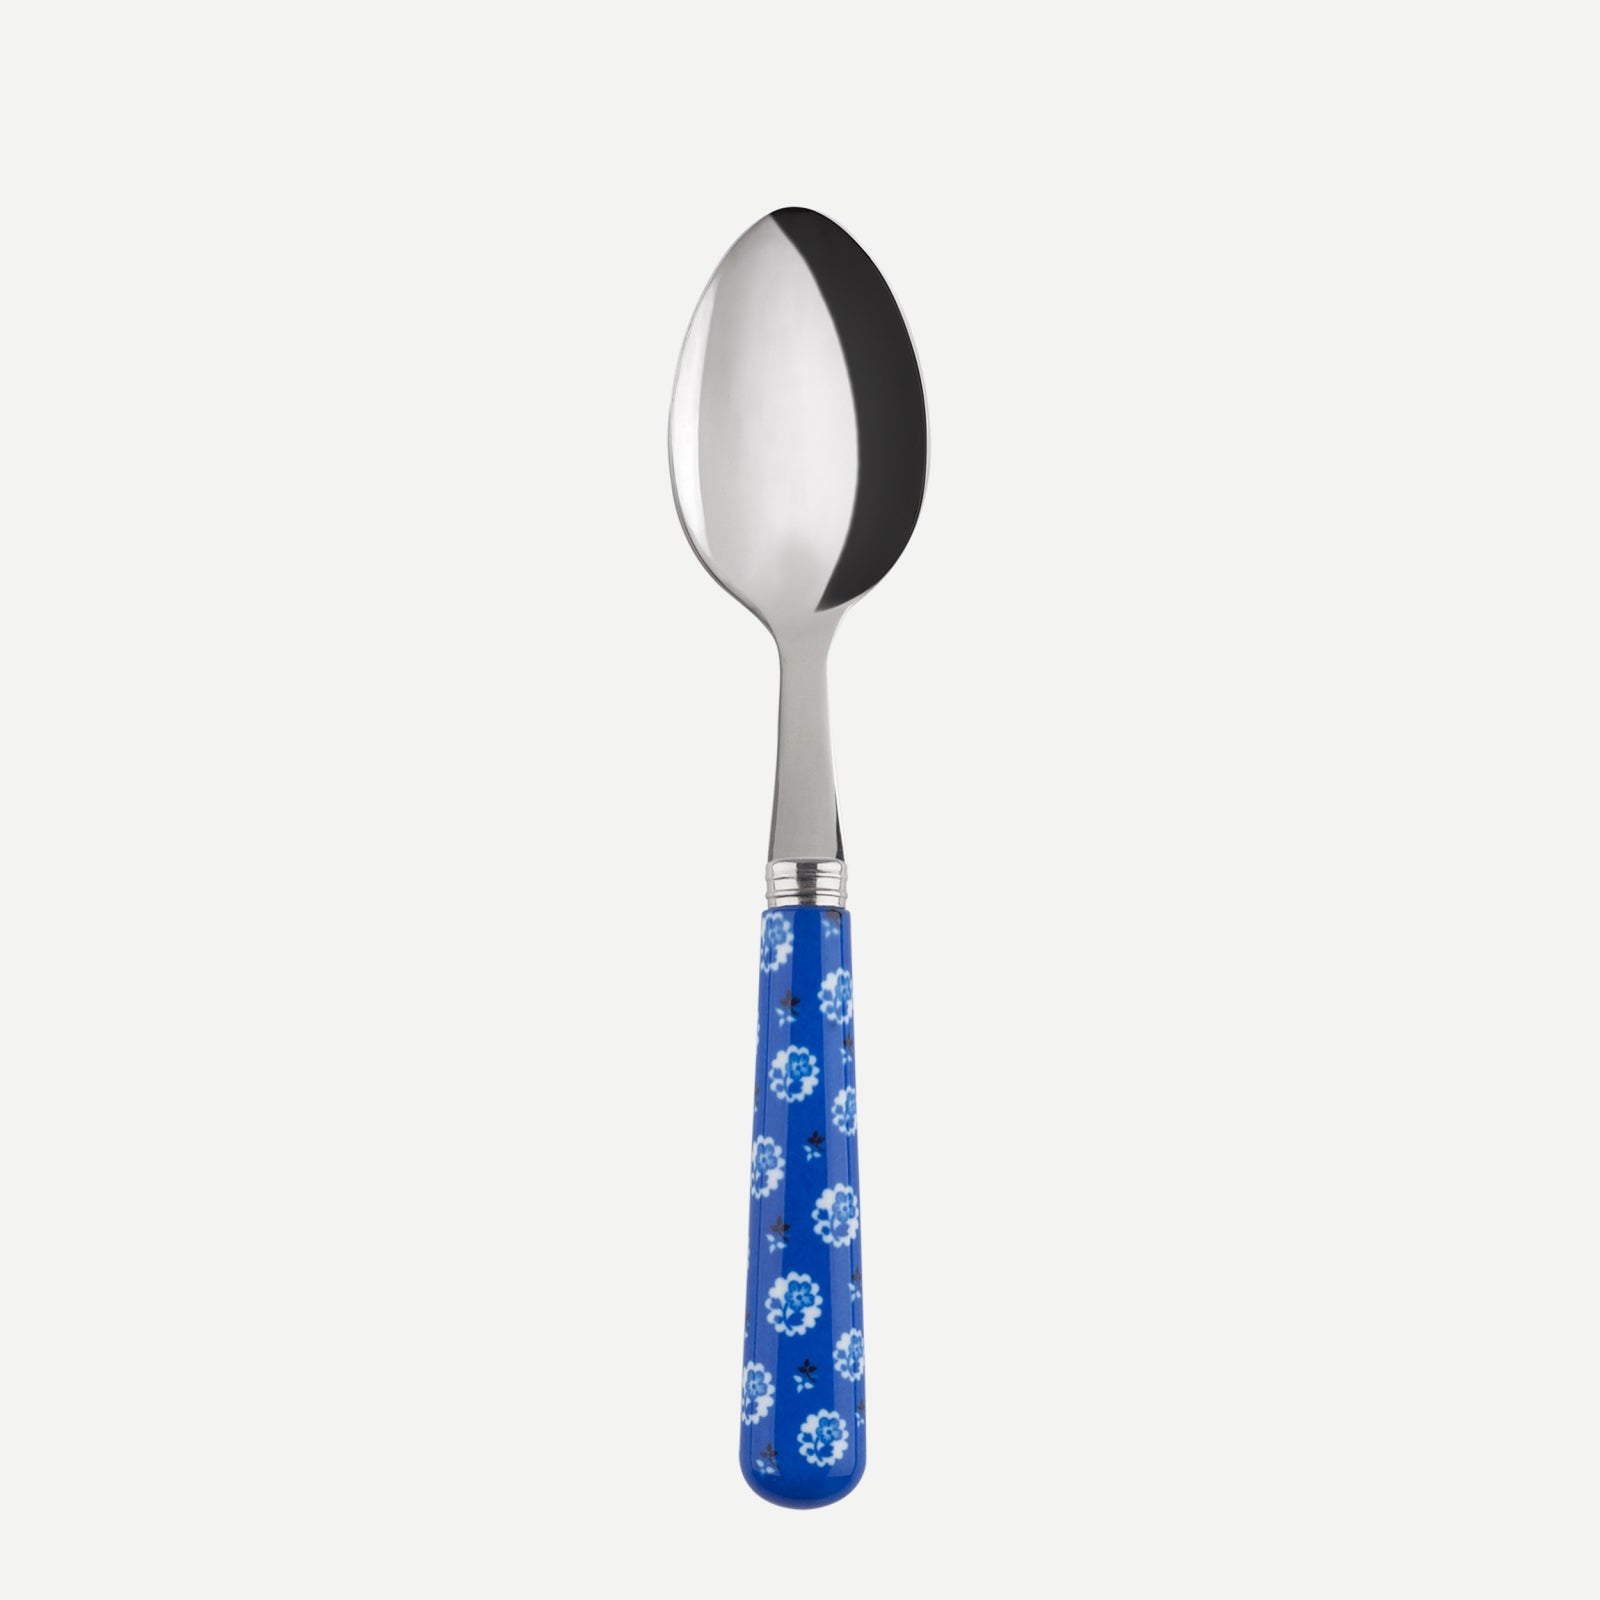 Demi-tasse spoon - Provencal - Lapis blue